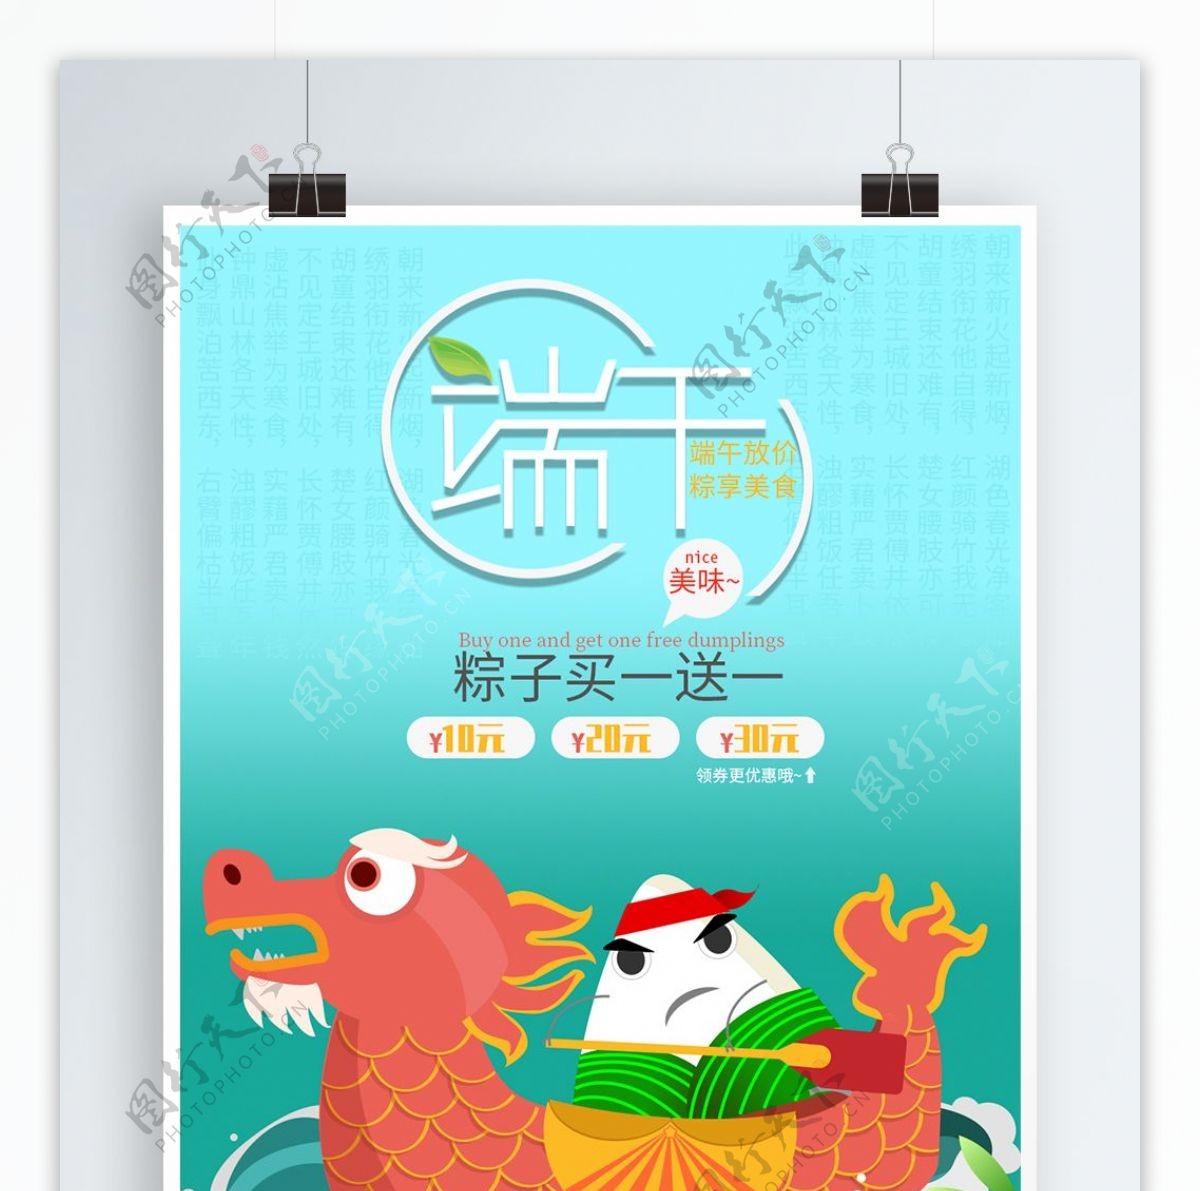 端午节节日粽子特卖宣传卡通可爱原创海报